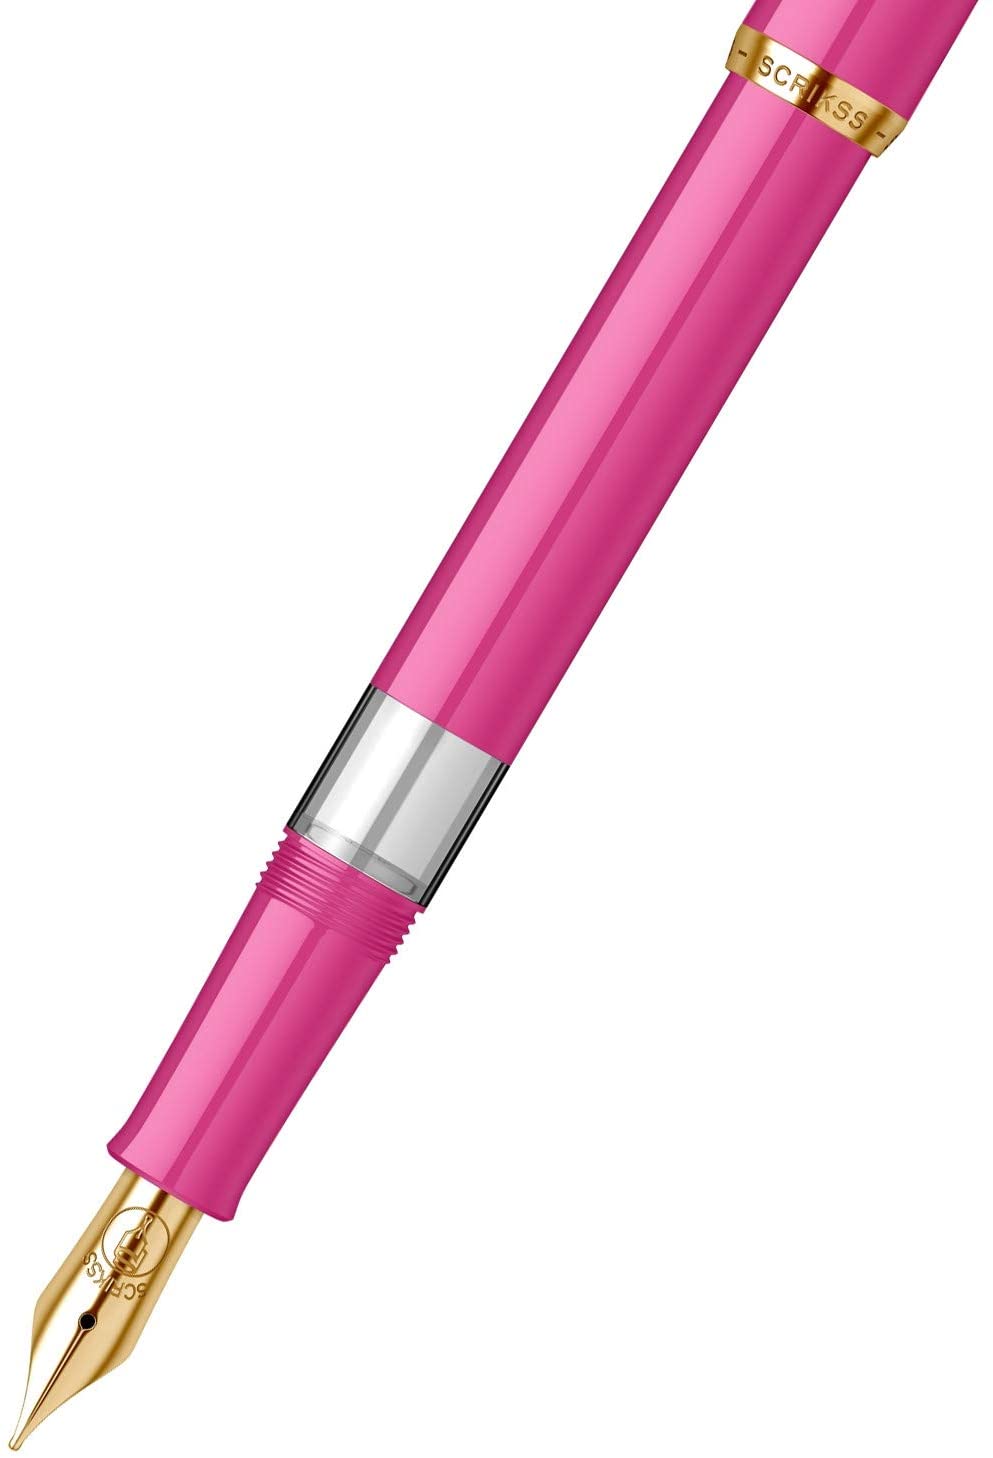 Scrikss 419 Legendary Pink Fountain Pen